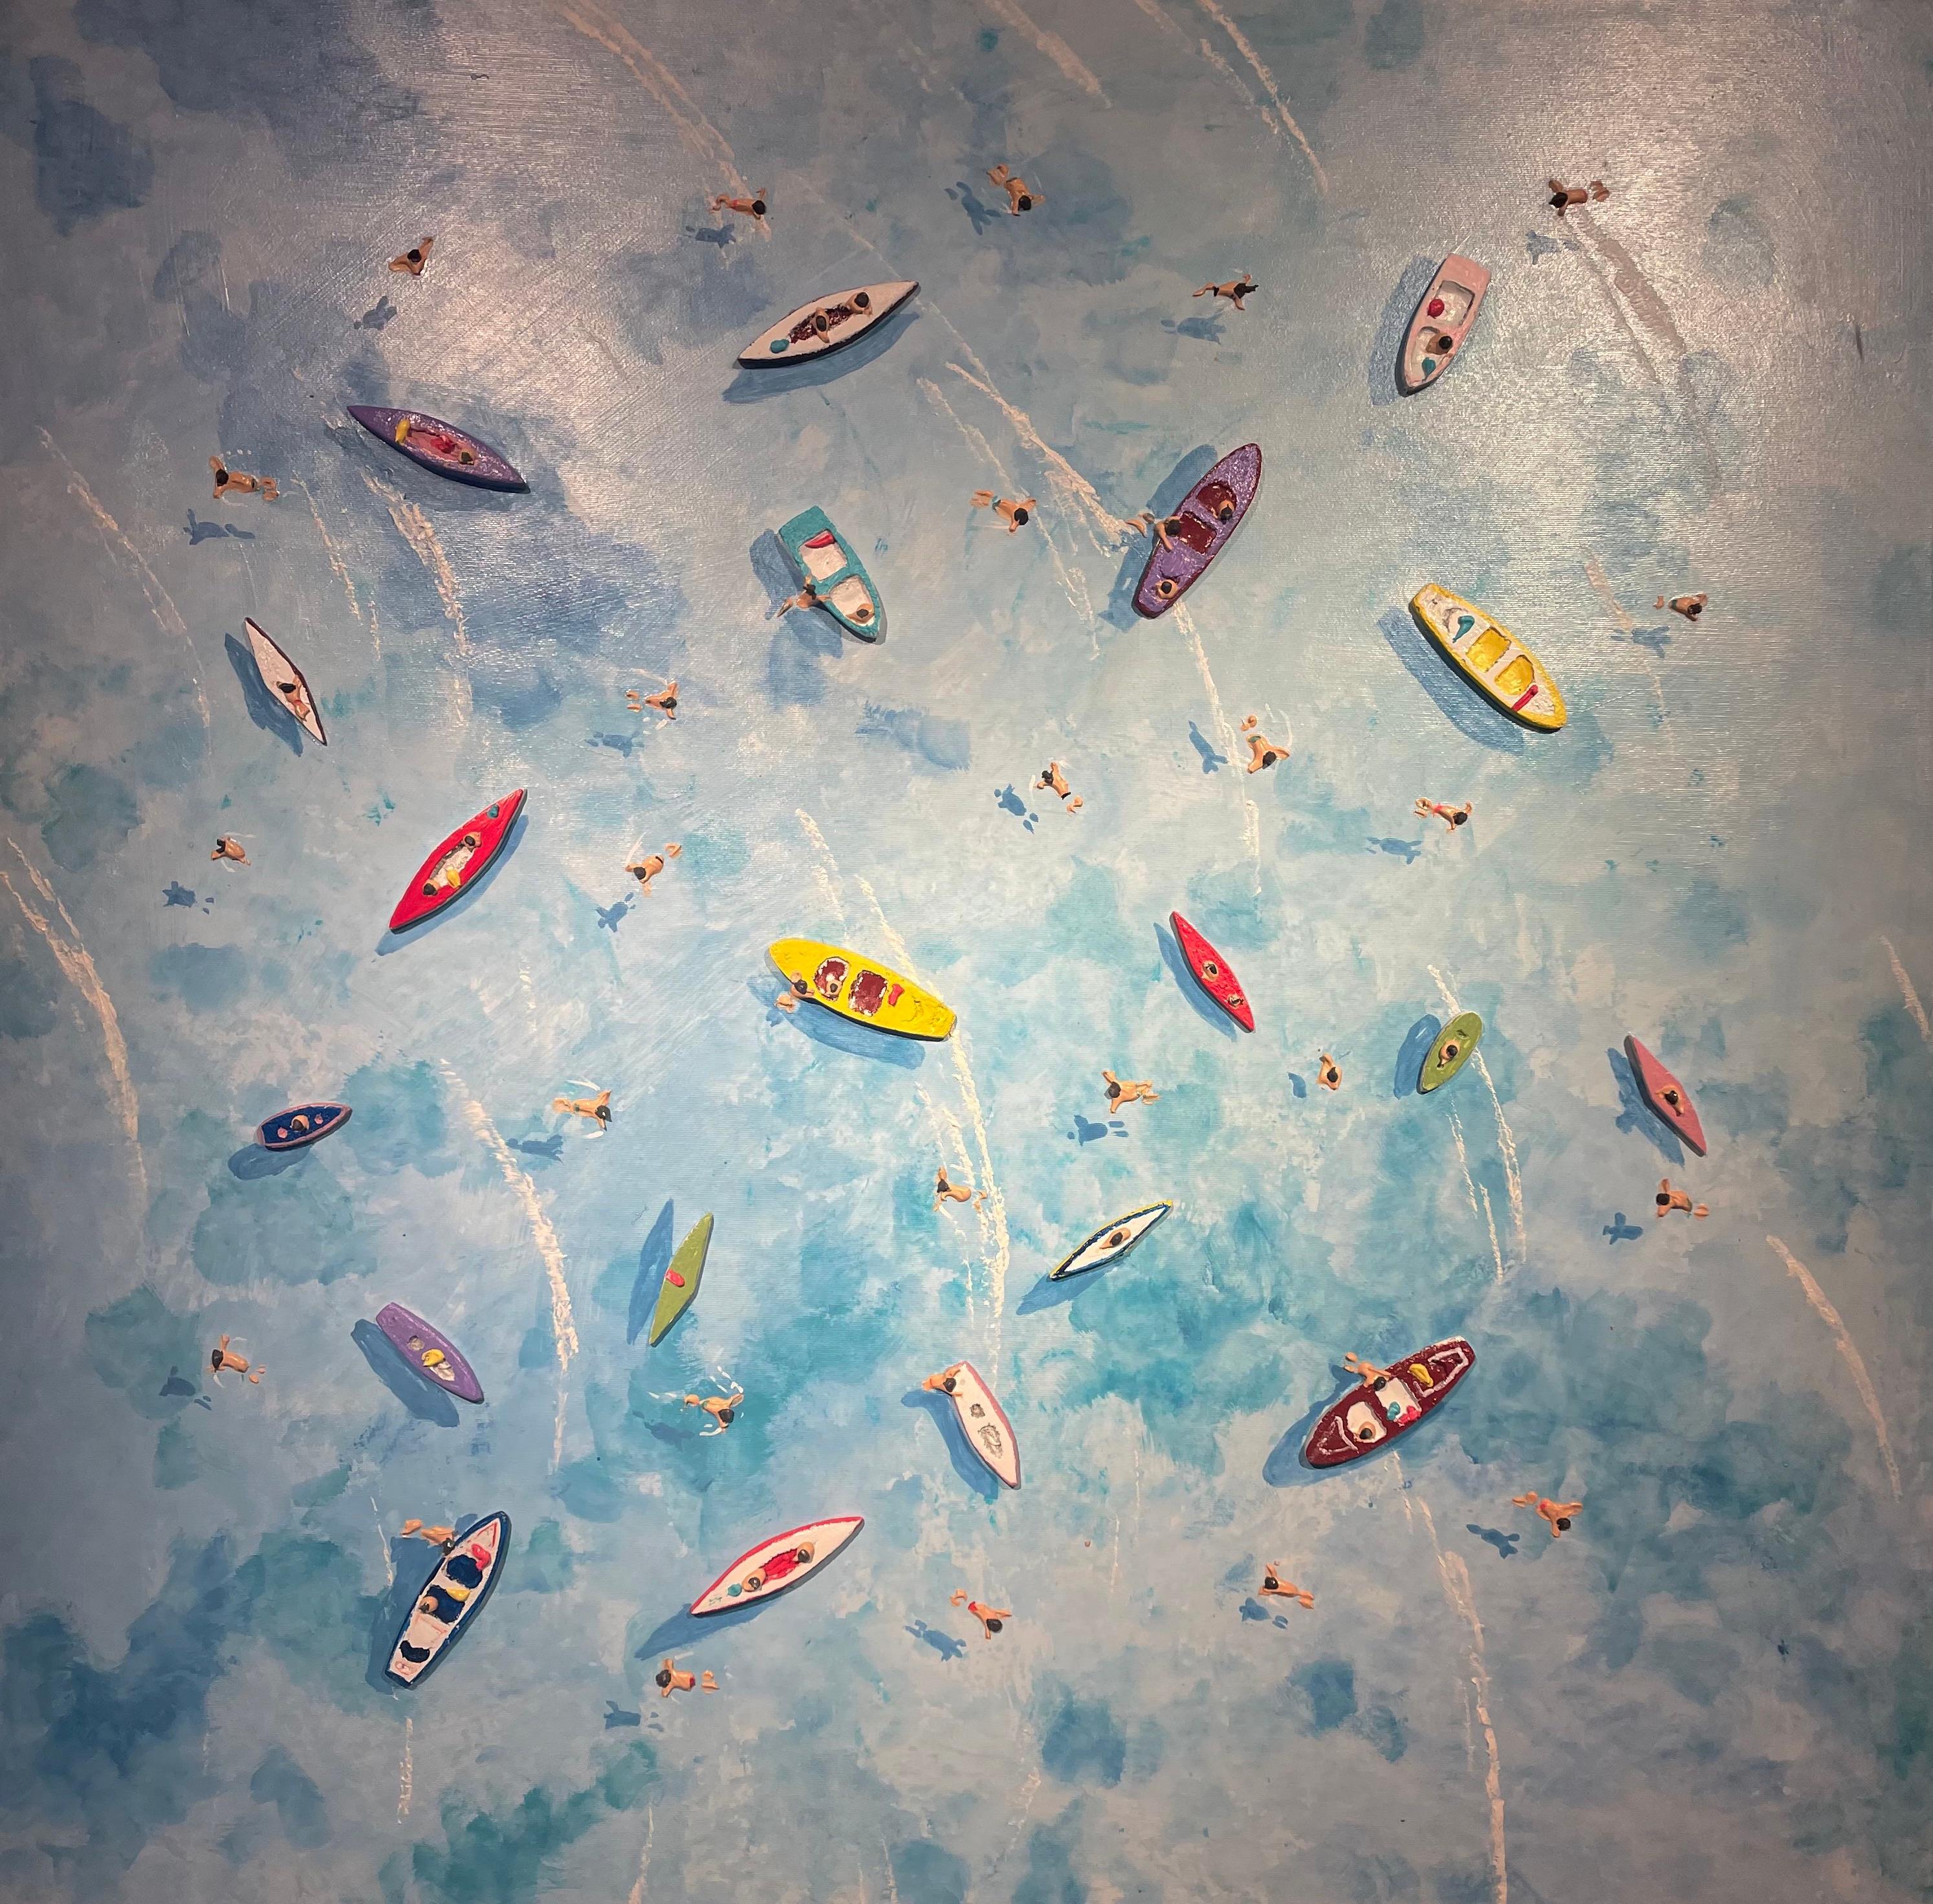 Landscape Painting Max Todd - « Boating Around », peinture contemporaine colorée en 3D représentant des bateaux et des personnages dans l'eau